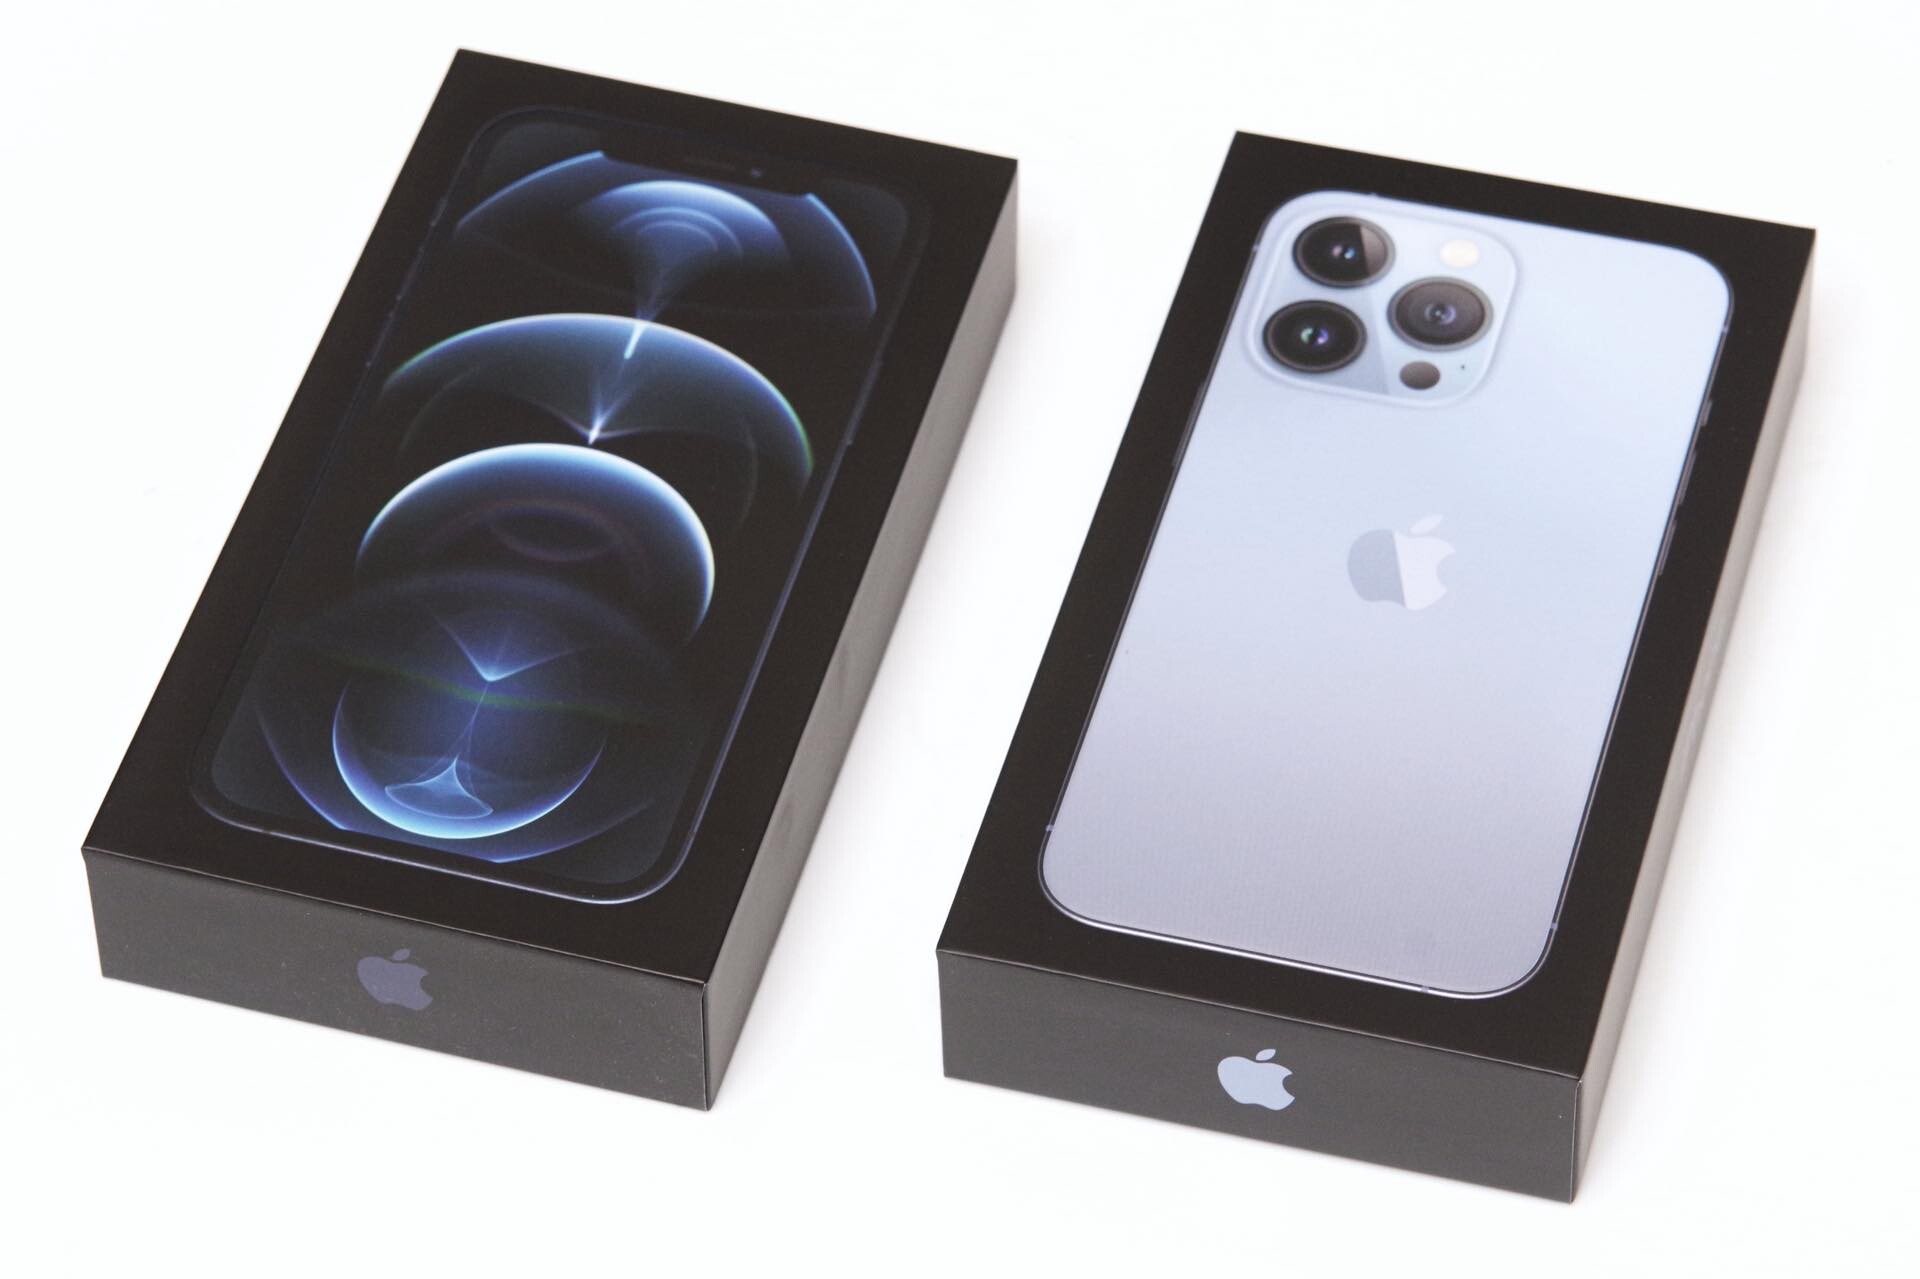 Appleの新型スマホ「iPhone 13 Pro」の新色シエラブルーを購入！開封して外観やパッケージを写真で紹介。iPhone 12 Pro